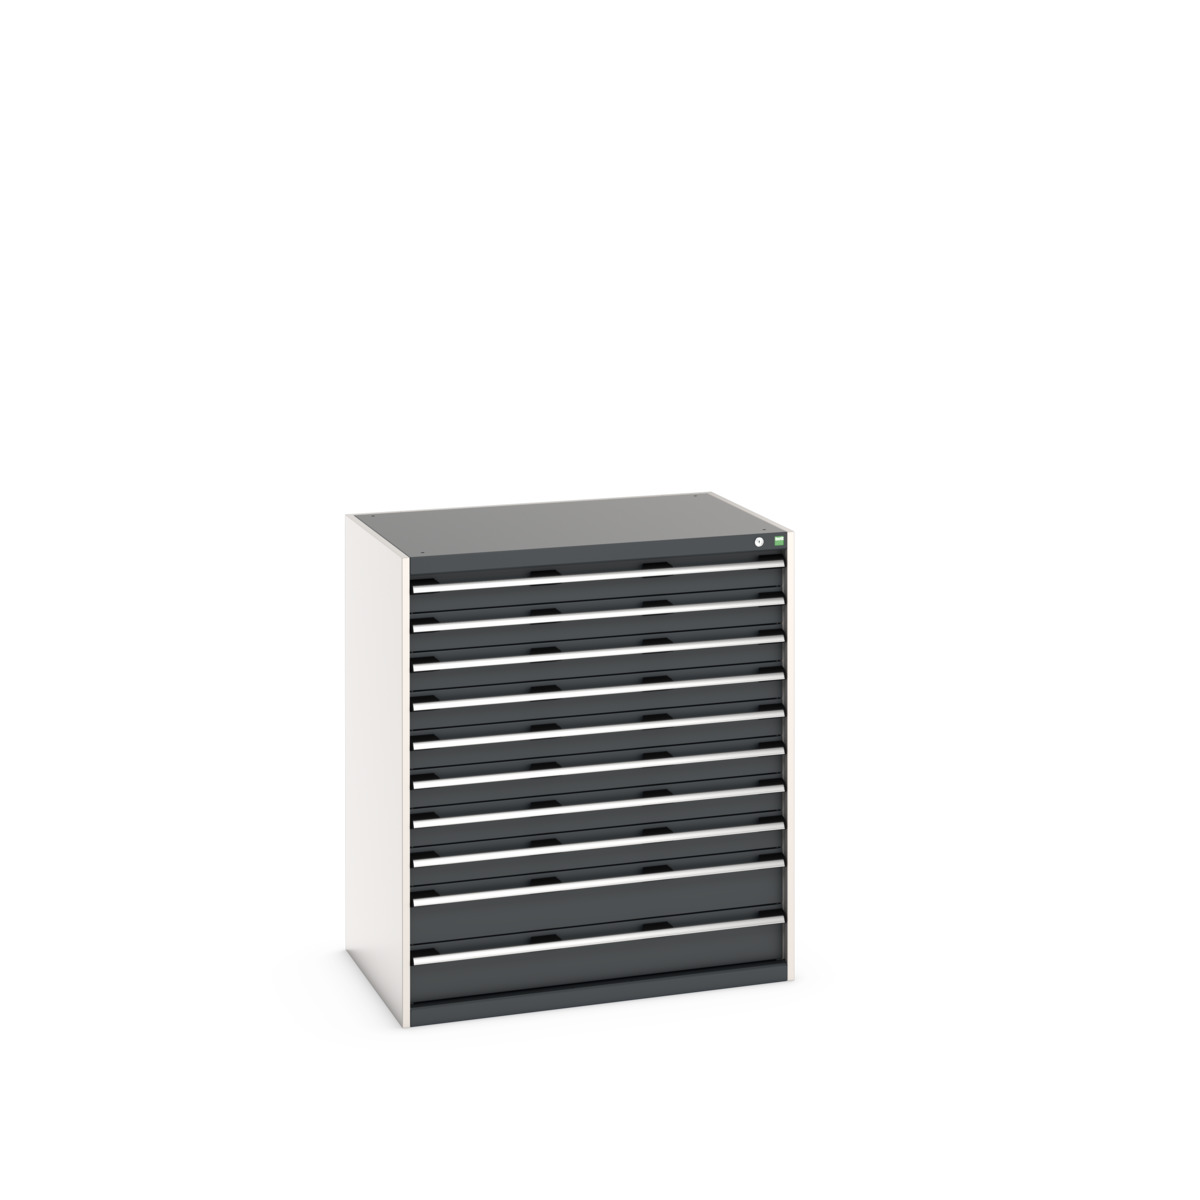 40029034.19V - cubio drawer cabinet